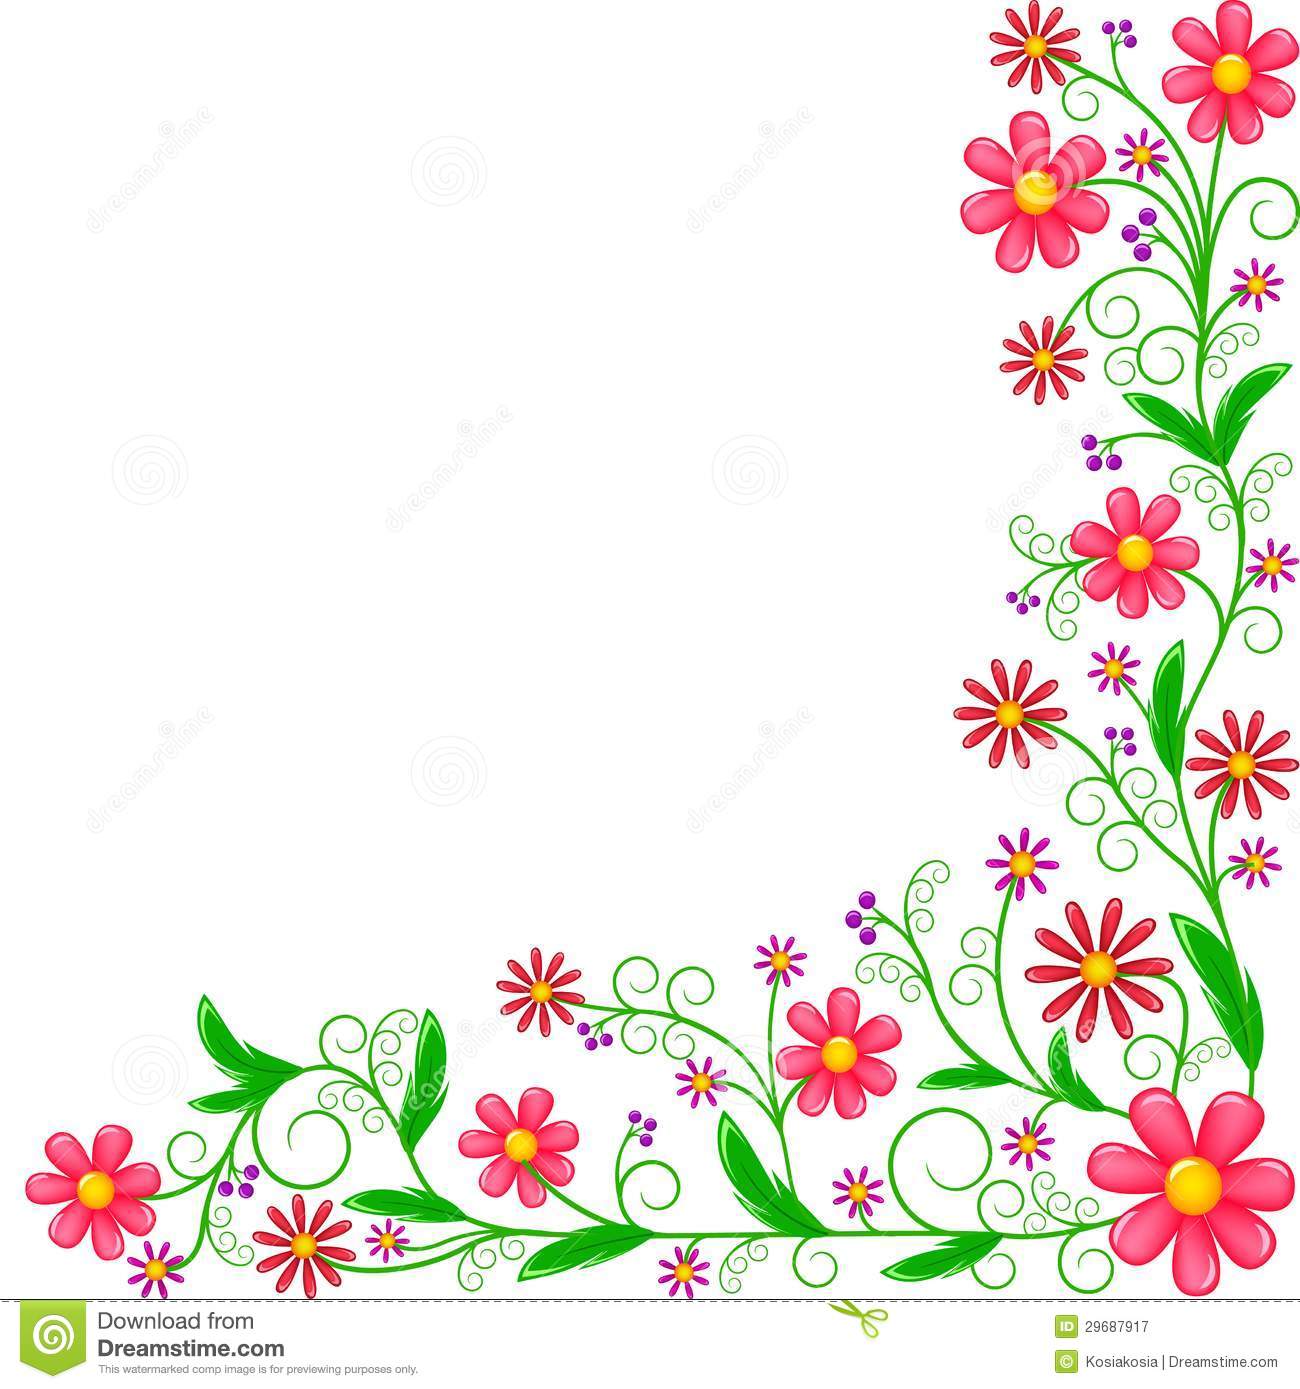 Flower border design.